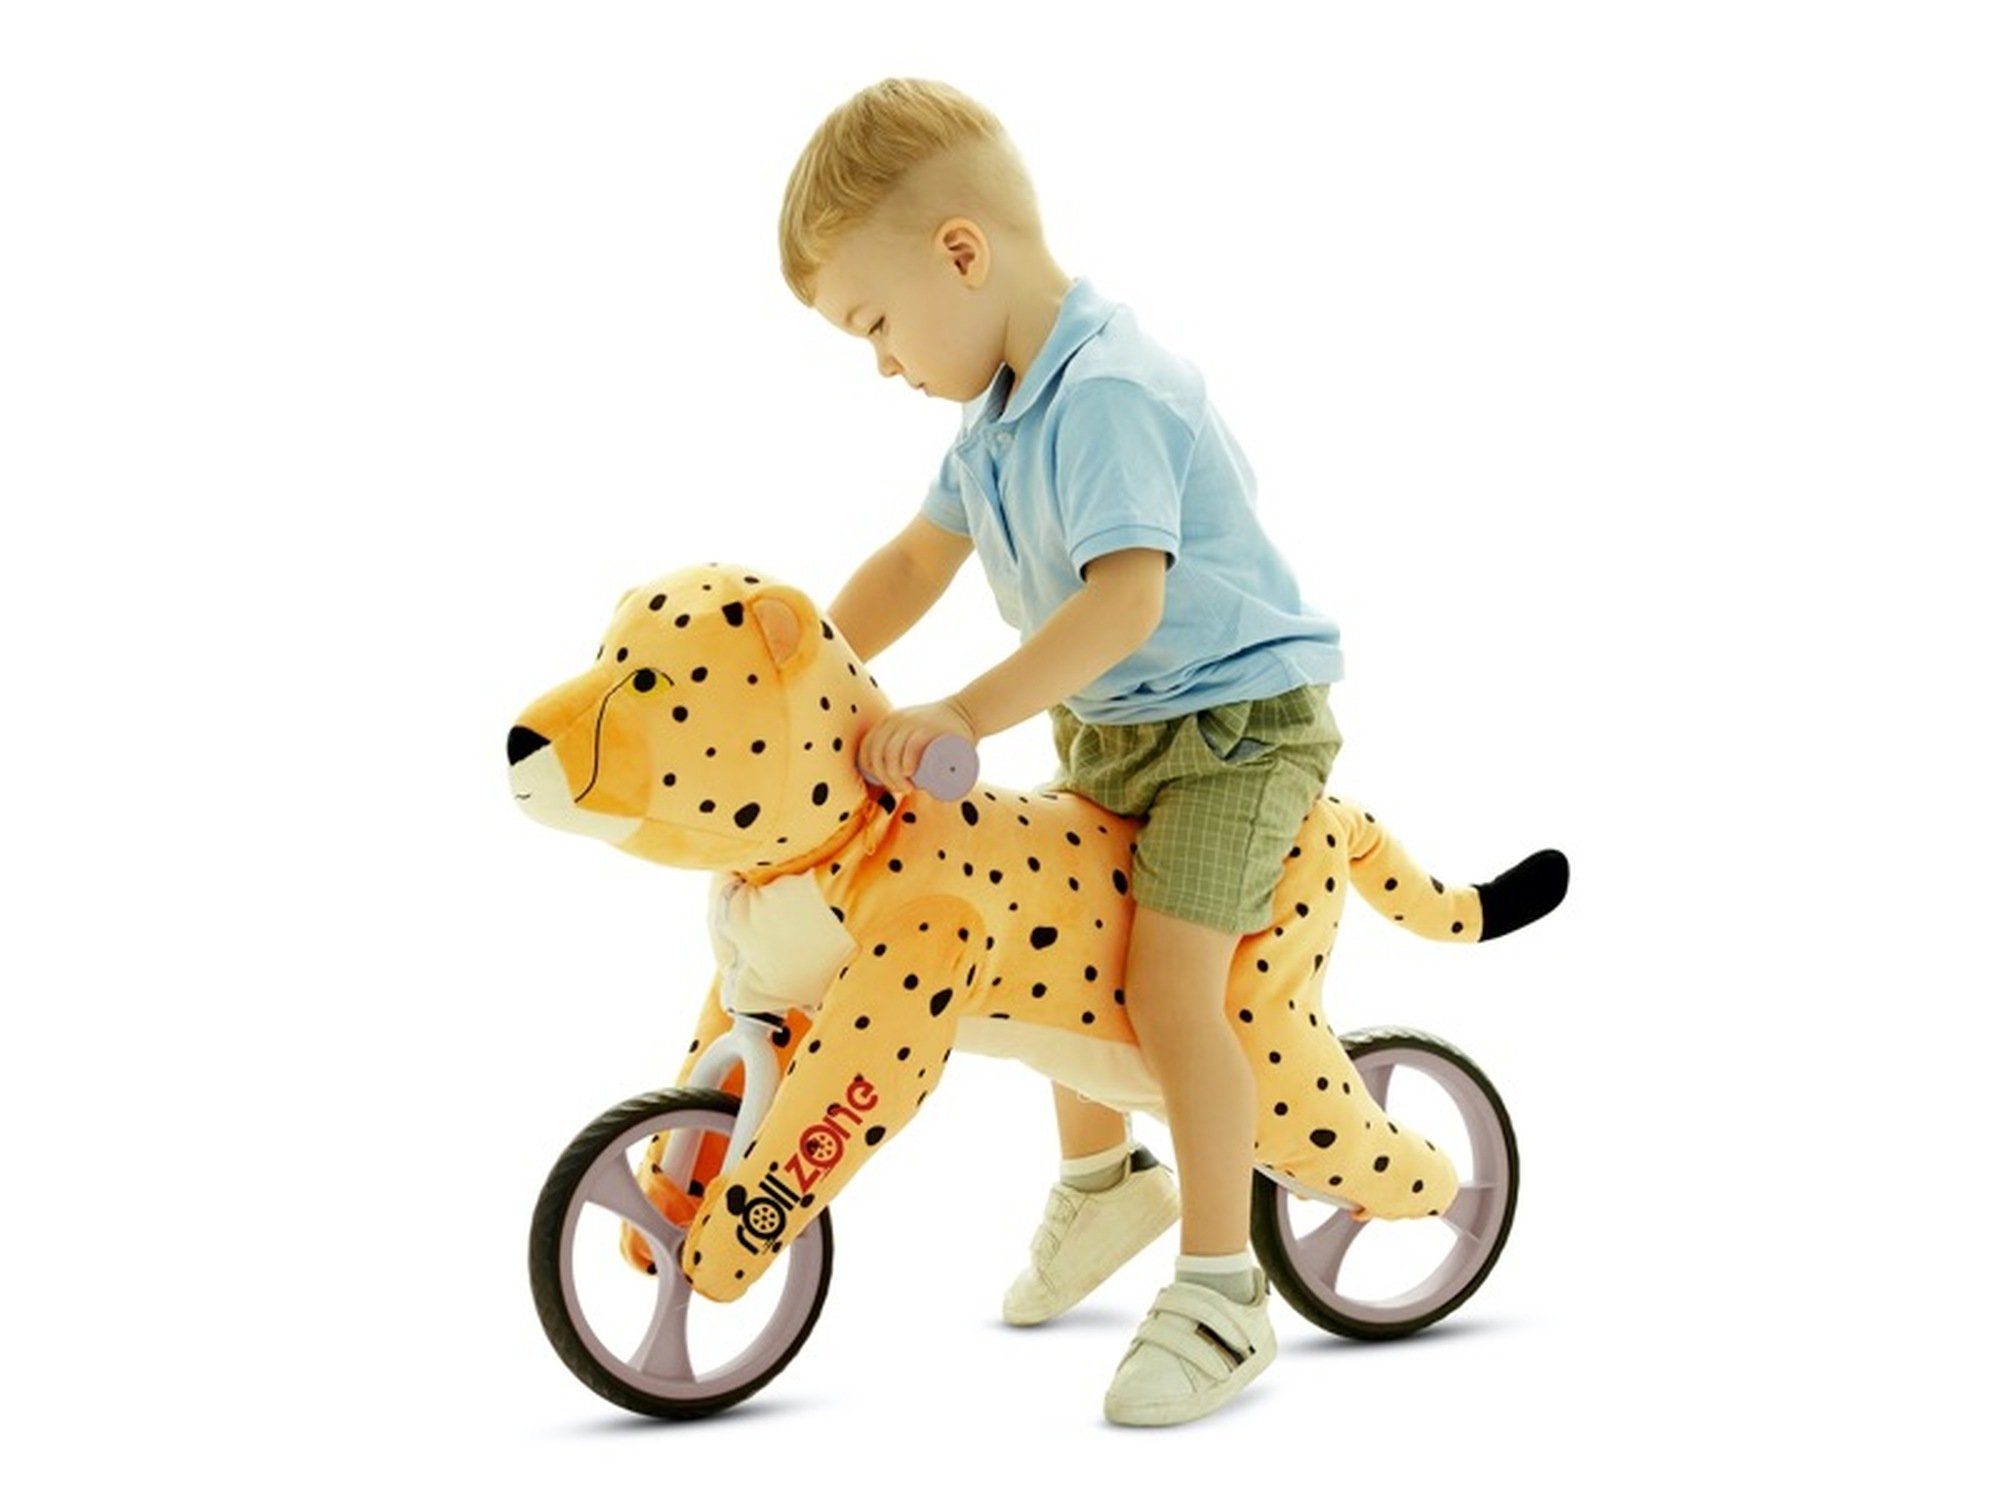 TPFLiving Laufrad Balance Bike mit EVA-Gummireifen, Kunstledersitz und LED-Beleuchtung, Belastbarkeit bis kg - Farbe: